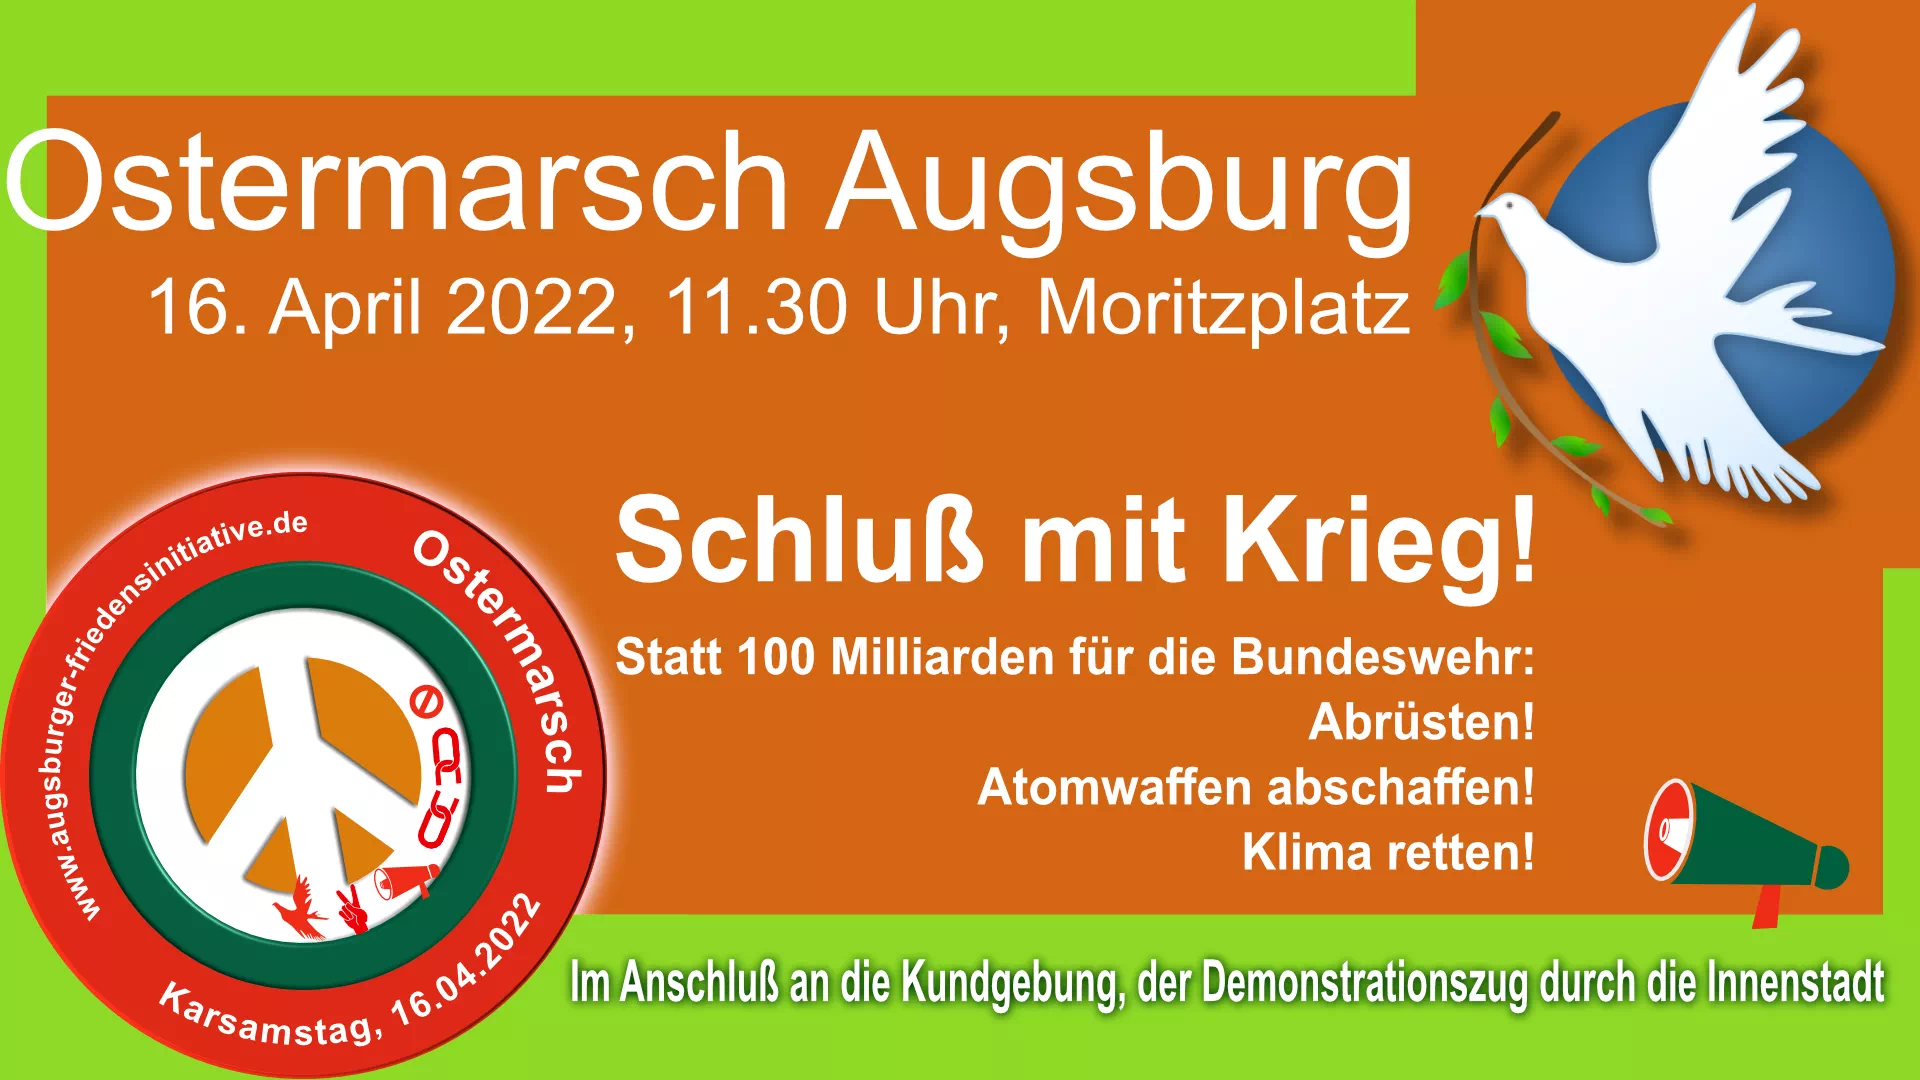 Ostermarsch Augsburg 2022, Augsburger Ostermarsch. Schluß mit Krieg!